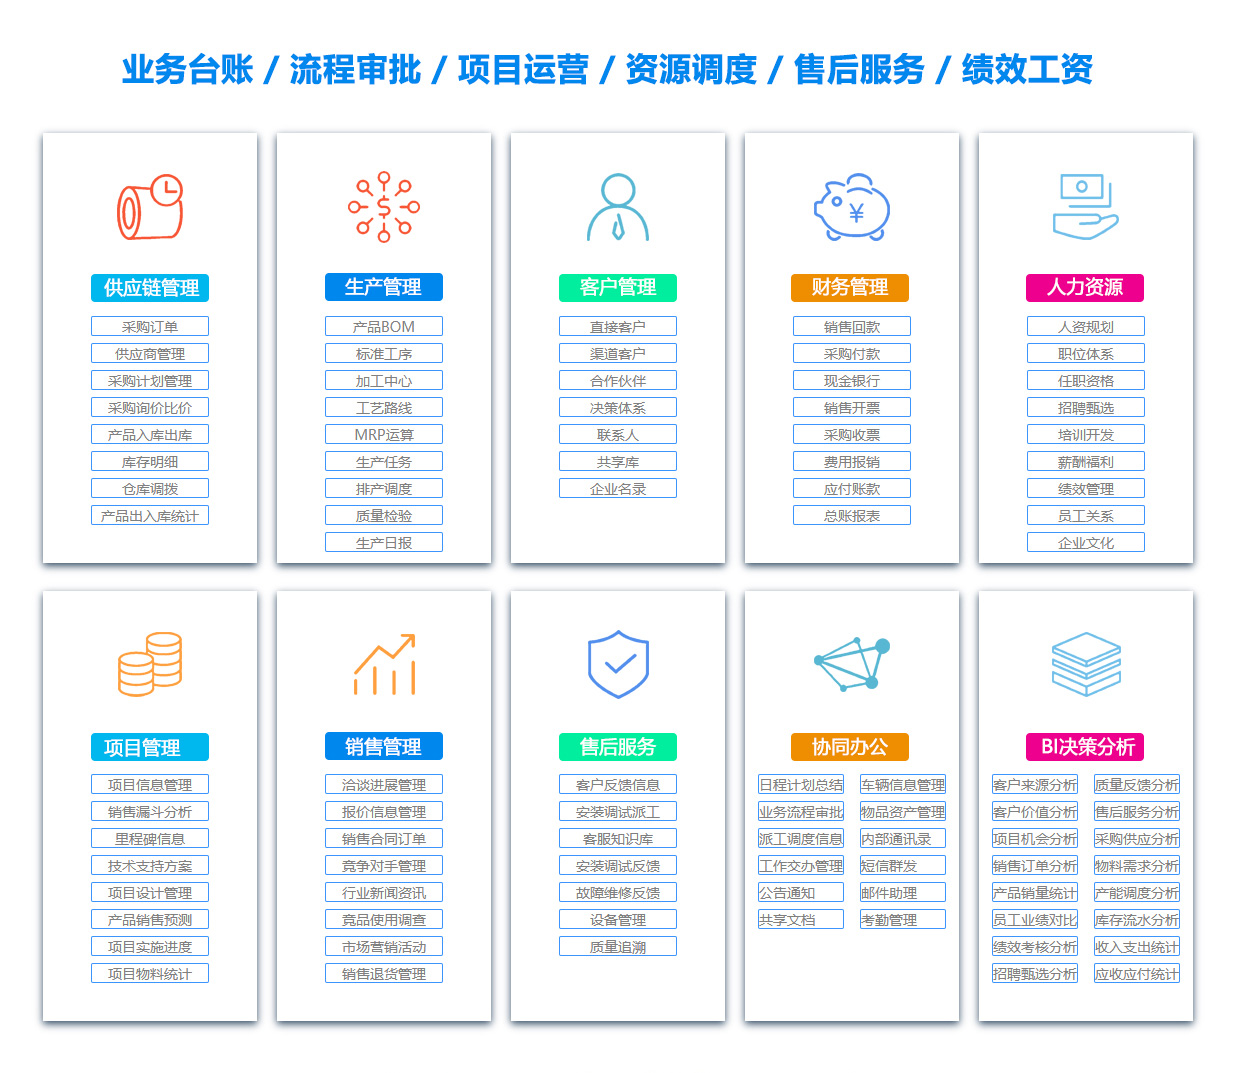 惠州招投标管理软件系统